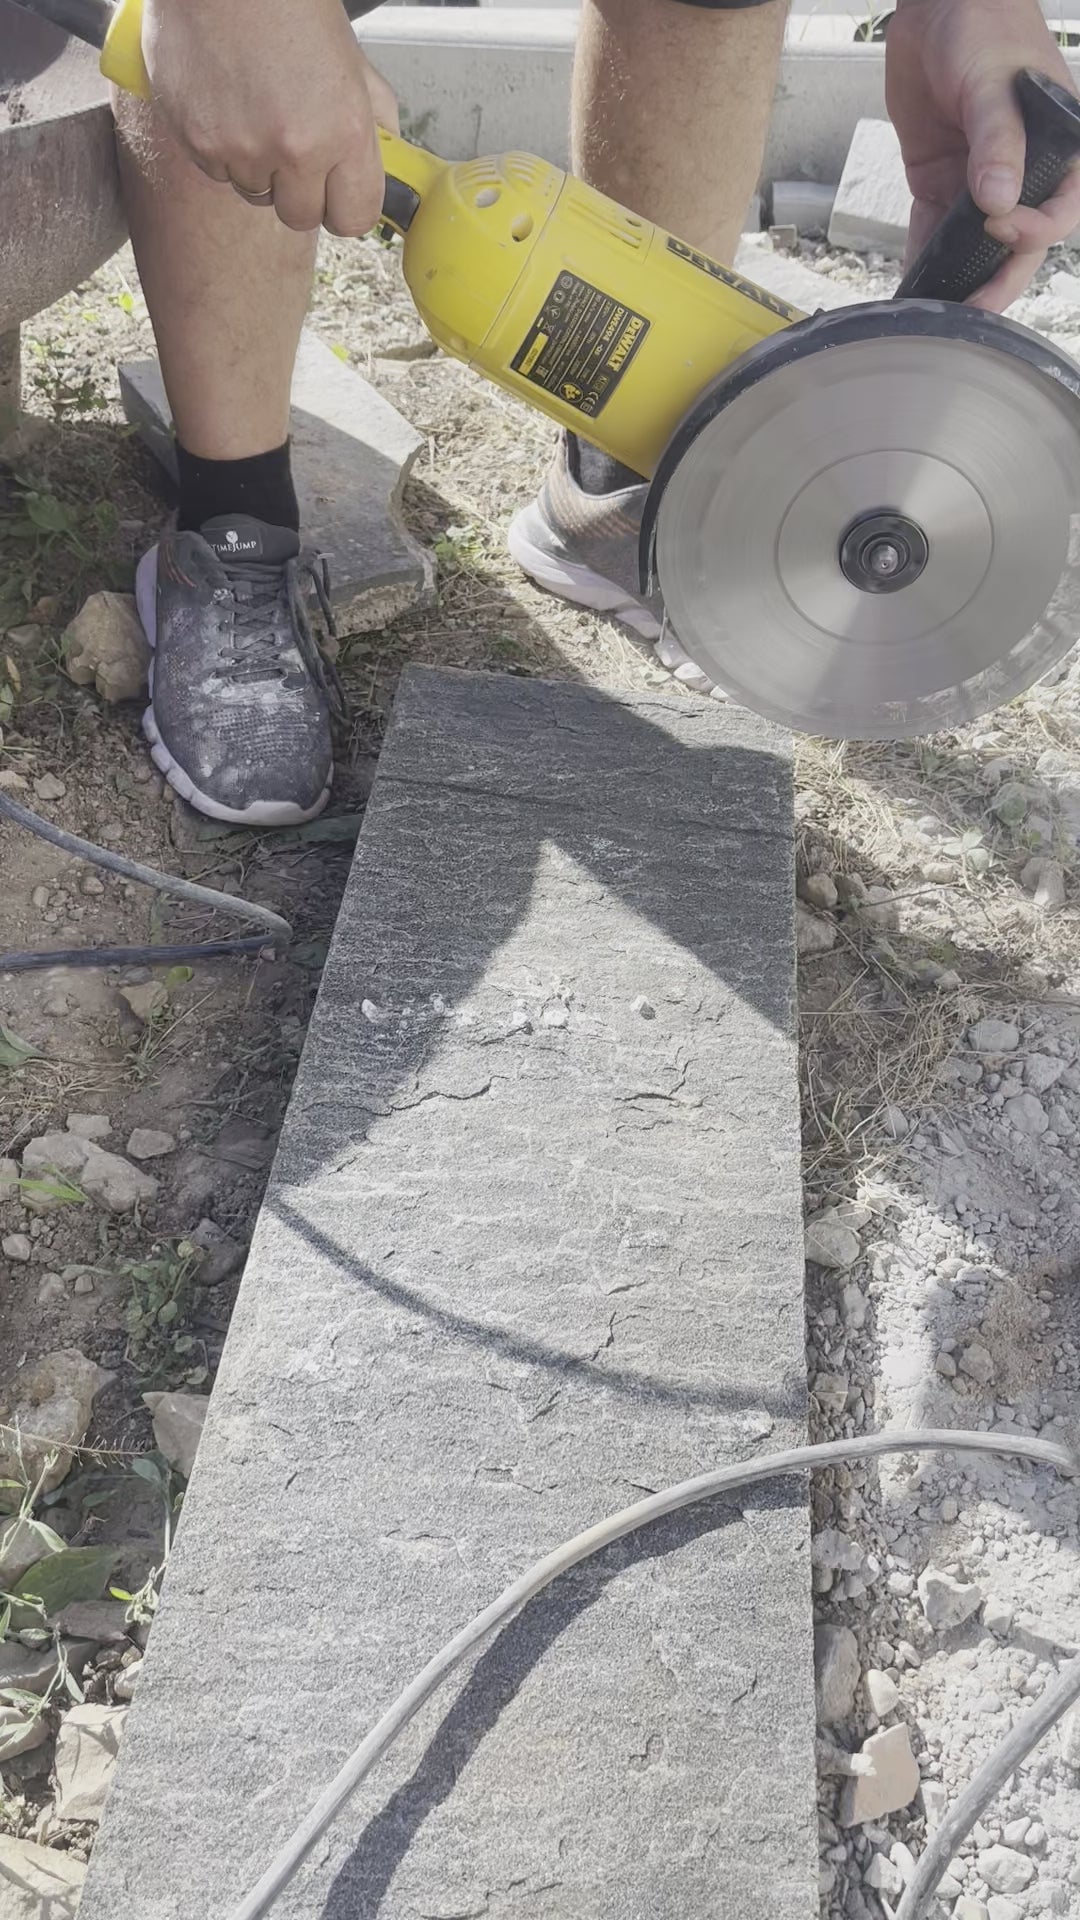 230 mm Flexscheibe Stein im Einsatz beim Granit Stein schneiden mit dem großen Winkelschleifer